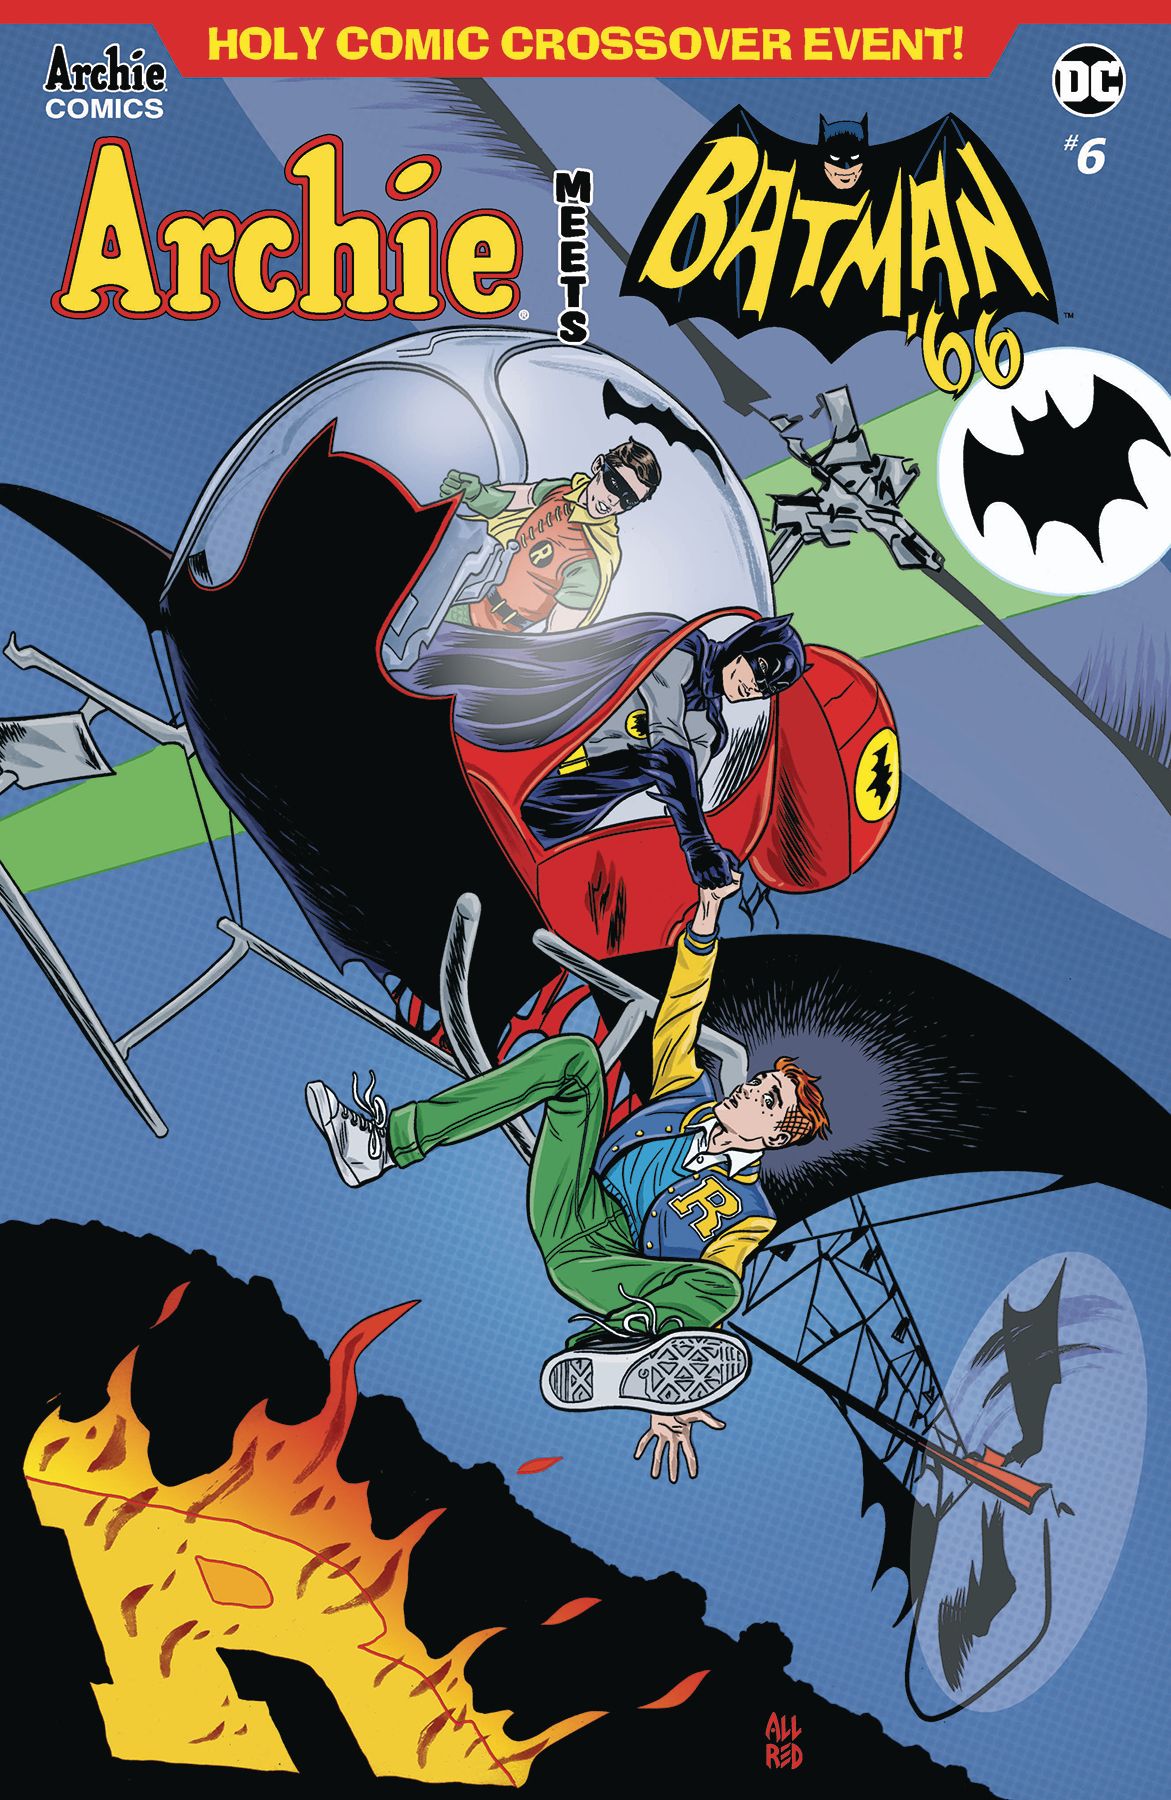 Archie Meets Batman '66 #6 Comic